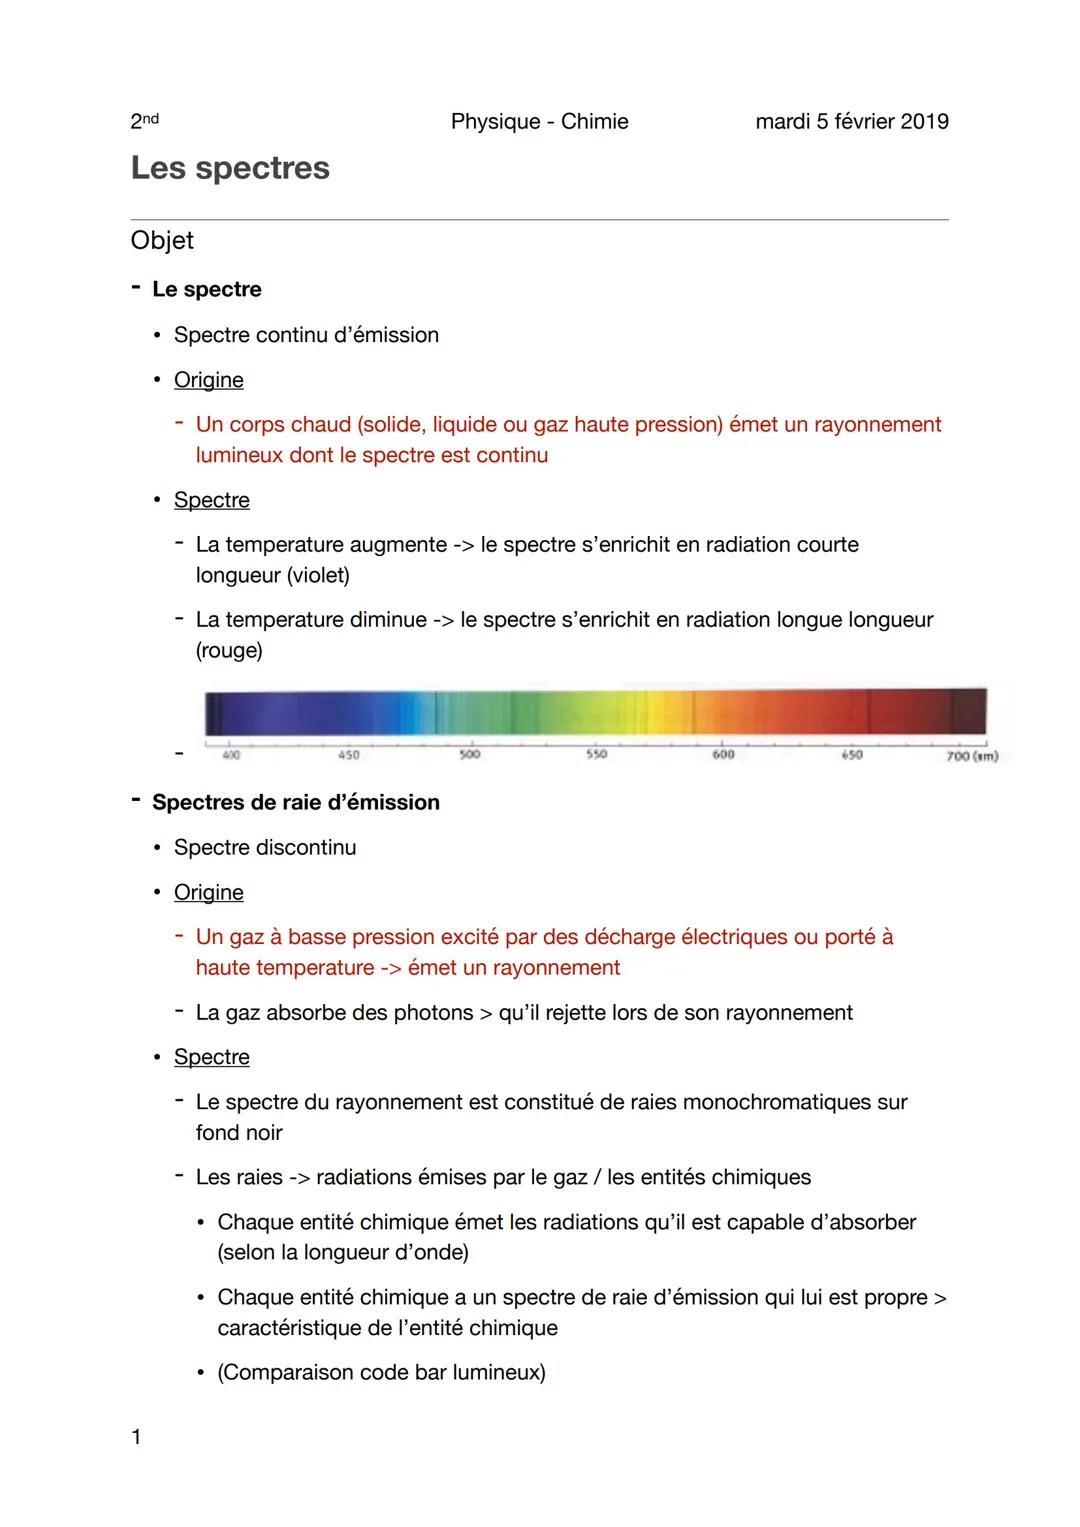 2nd
Les spectres
Objet
1
●
Le spectre
Spectre continu d'émission
• Origine
- Un corps chaud (solide, liquide ou gaz haute pression) émet un 